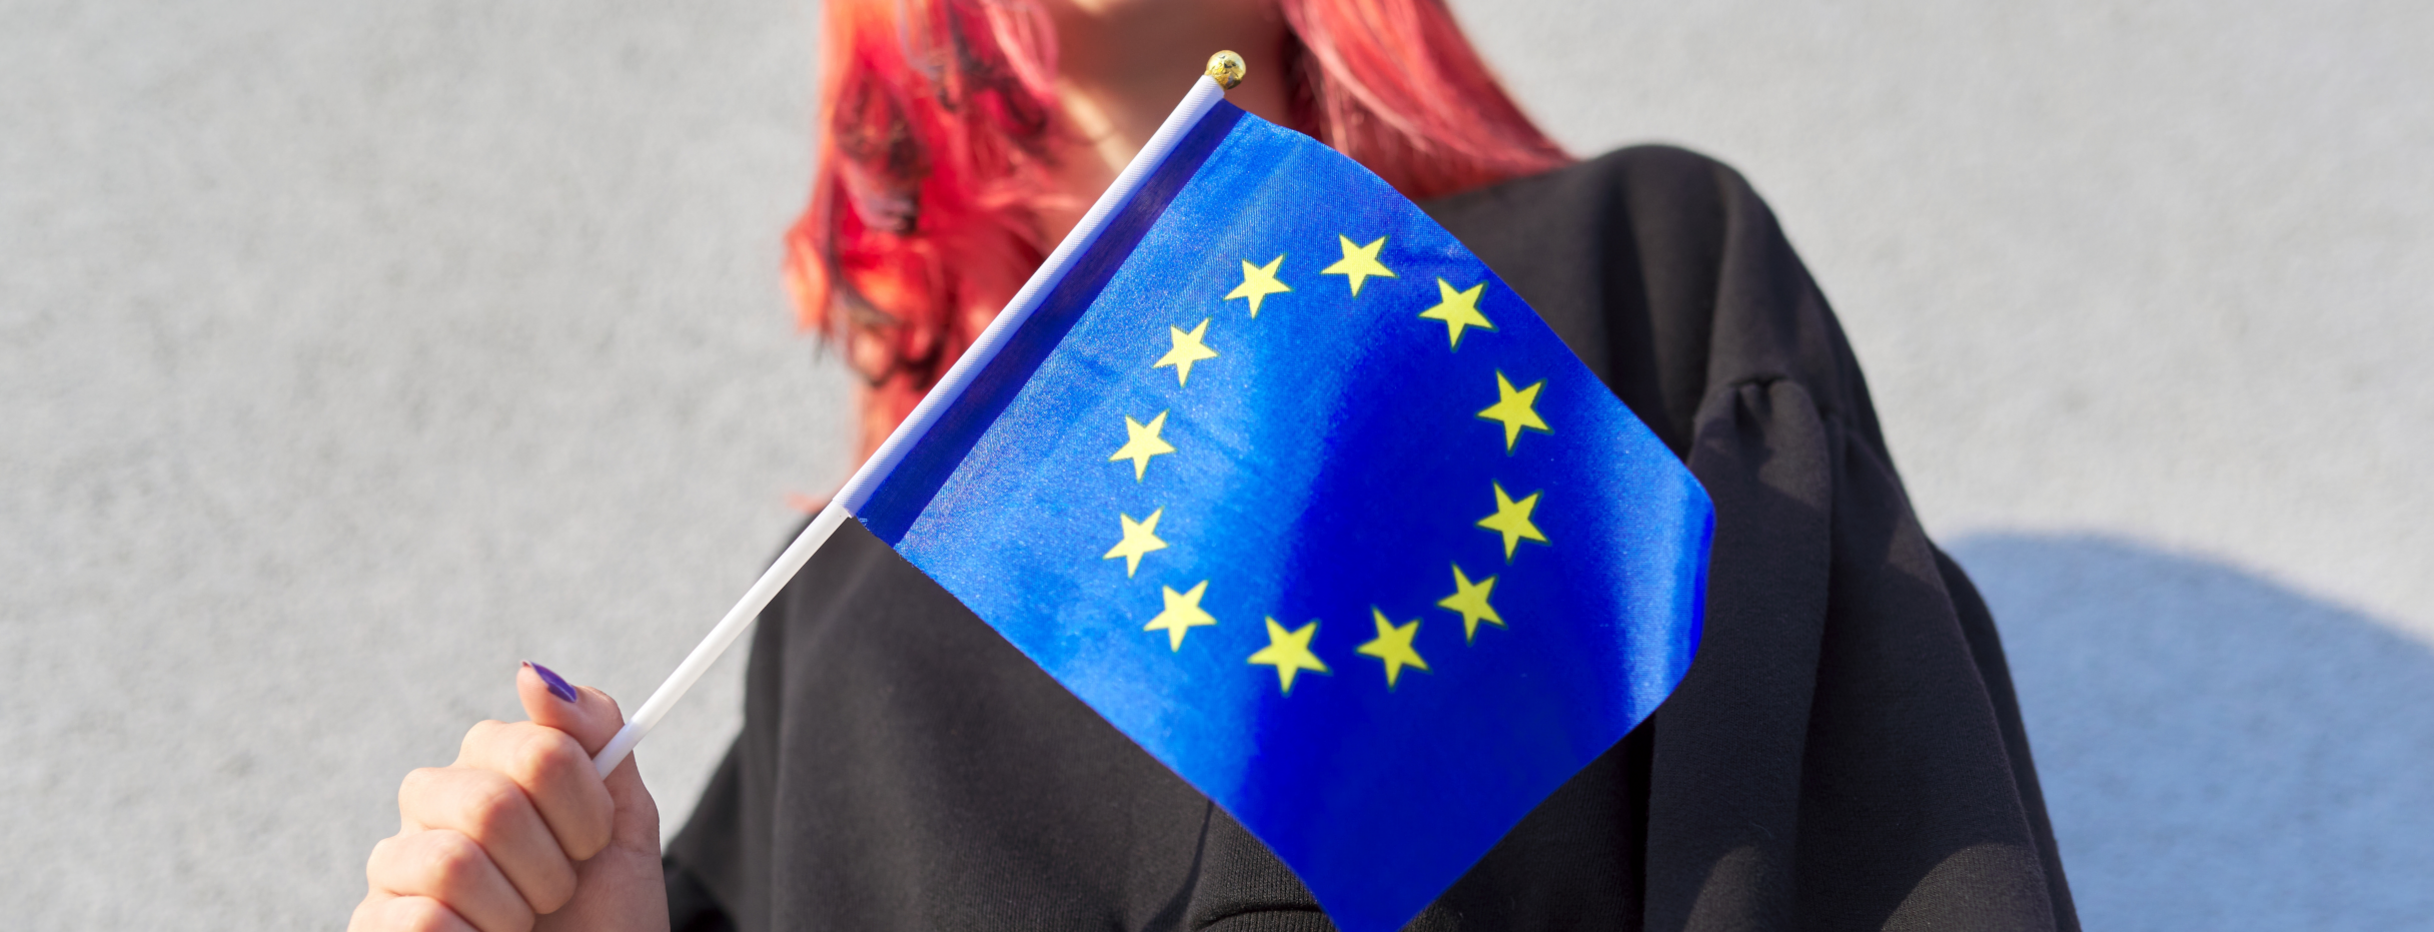 Teilansicht einer jungen Frau mit rotgefärbten Haaren, die eine kleine Europaflagge in der rechten Hand hält.